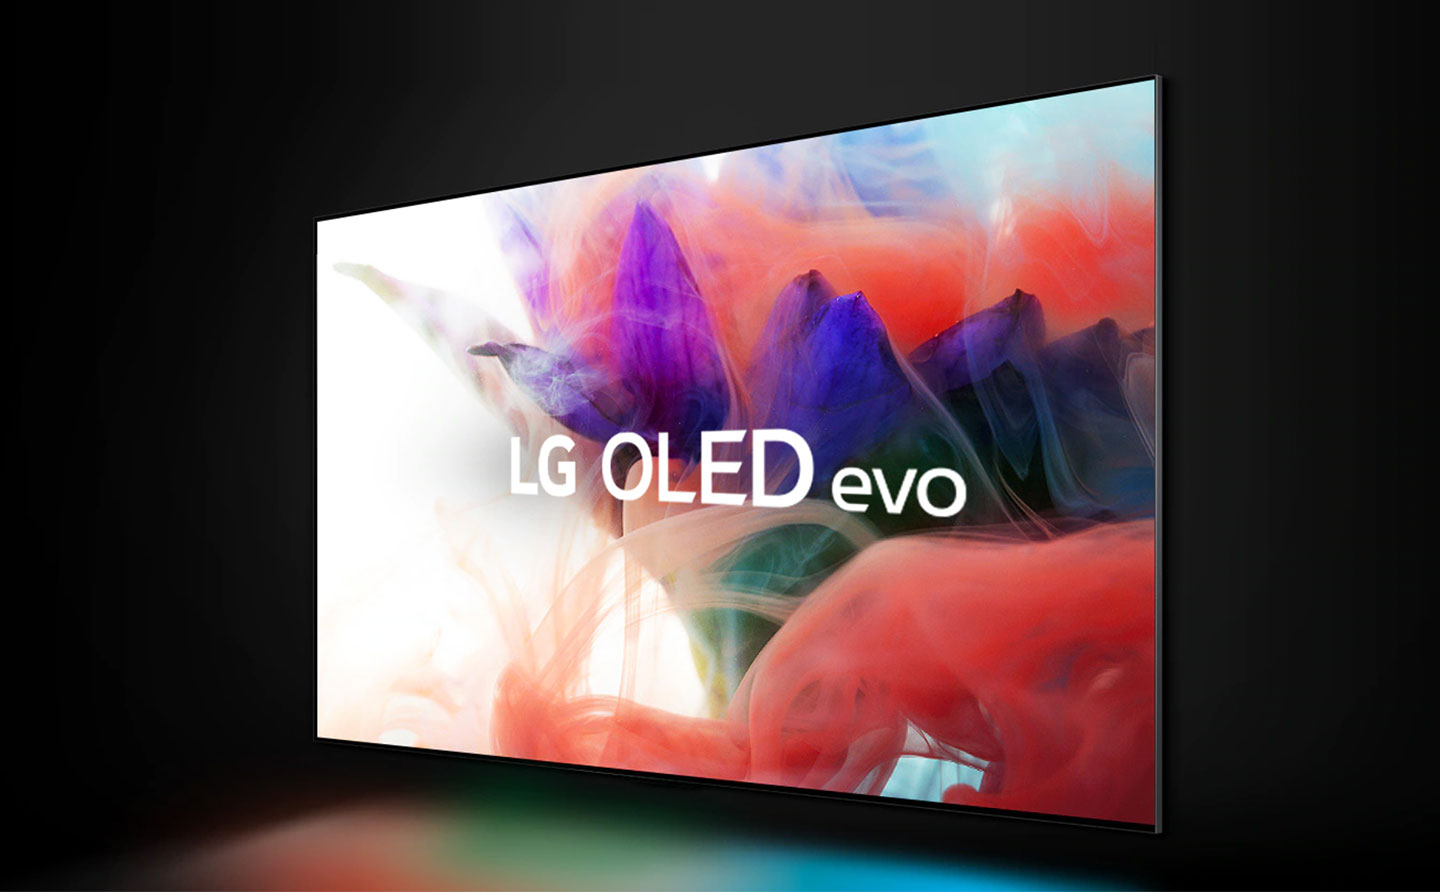 LG OLED evo 顯示技術是 LG 在 OLED 電視技術領域耕耘多年的集大成之作。